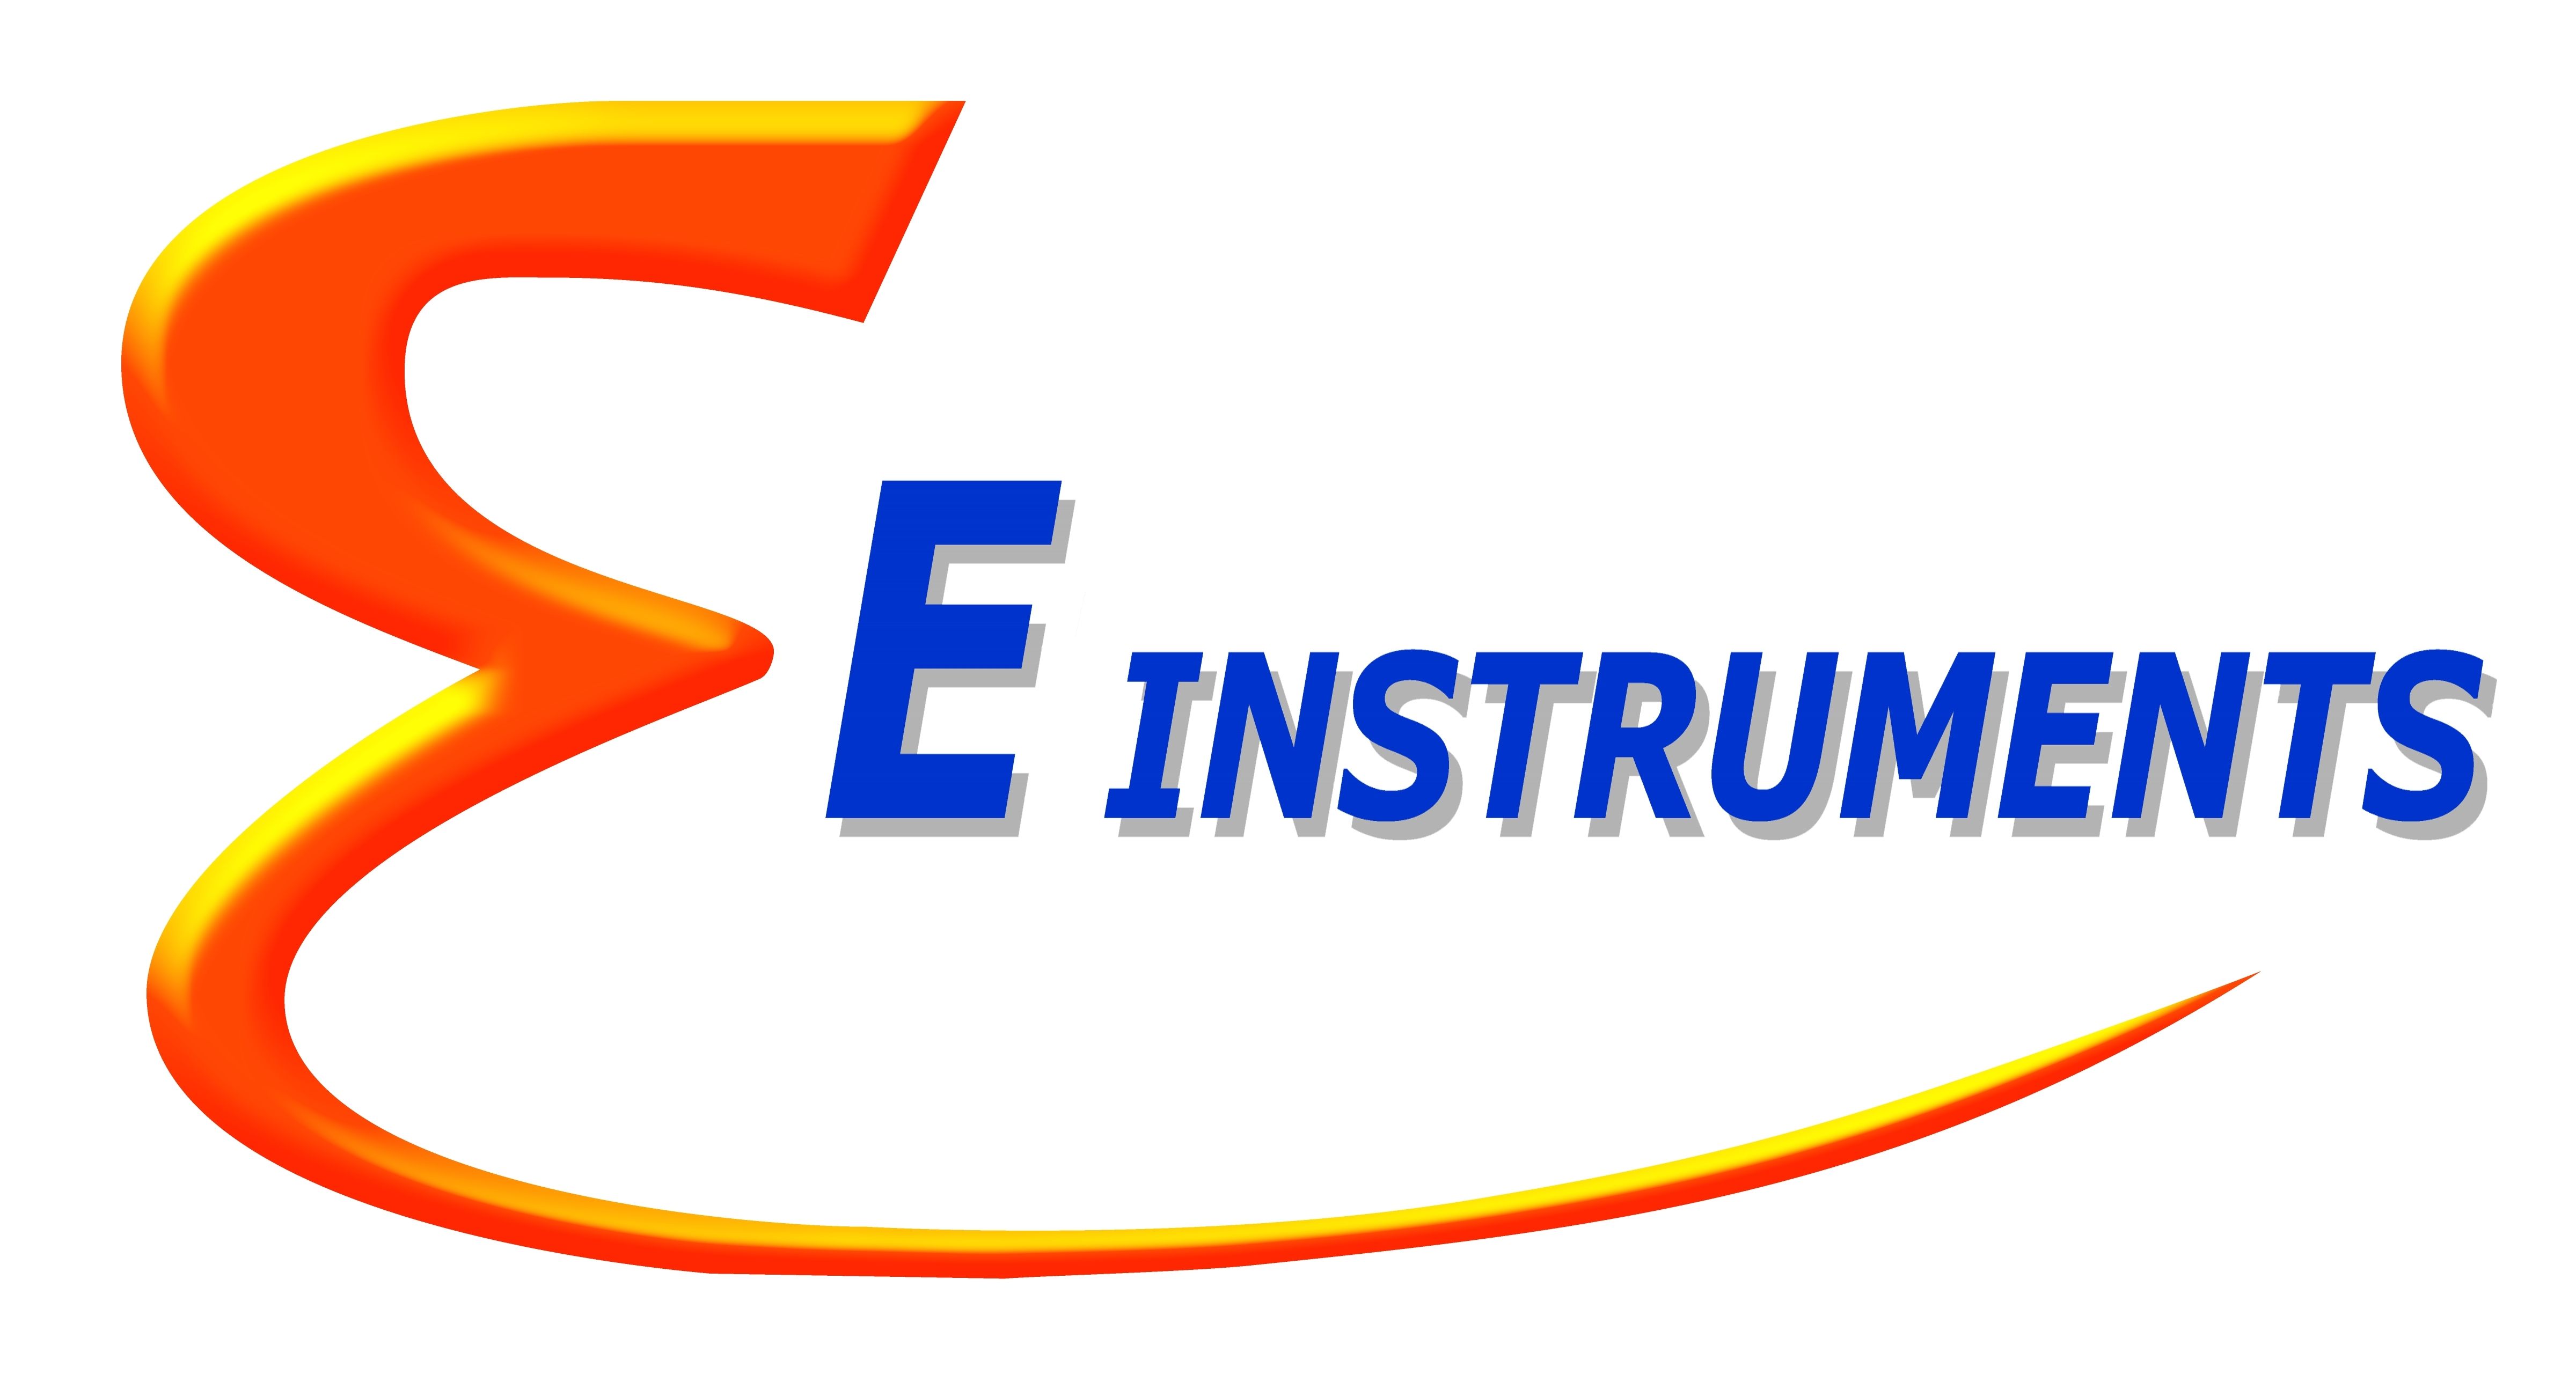 einstruments_logo